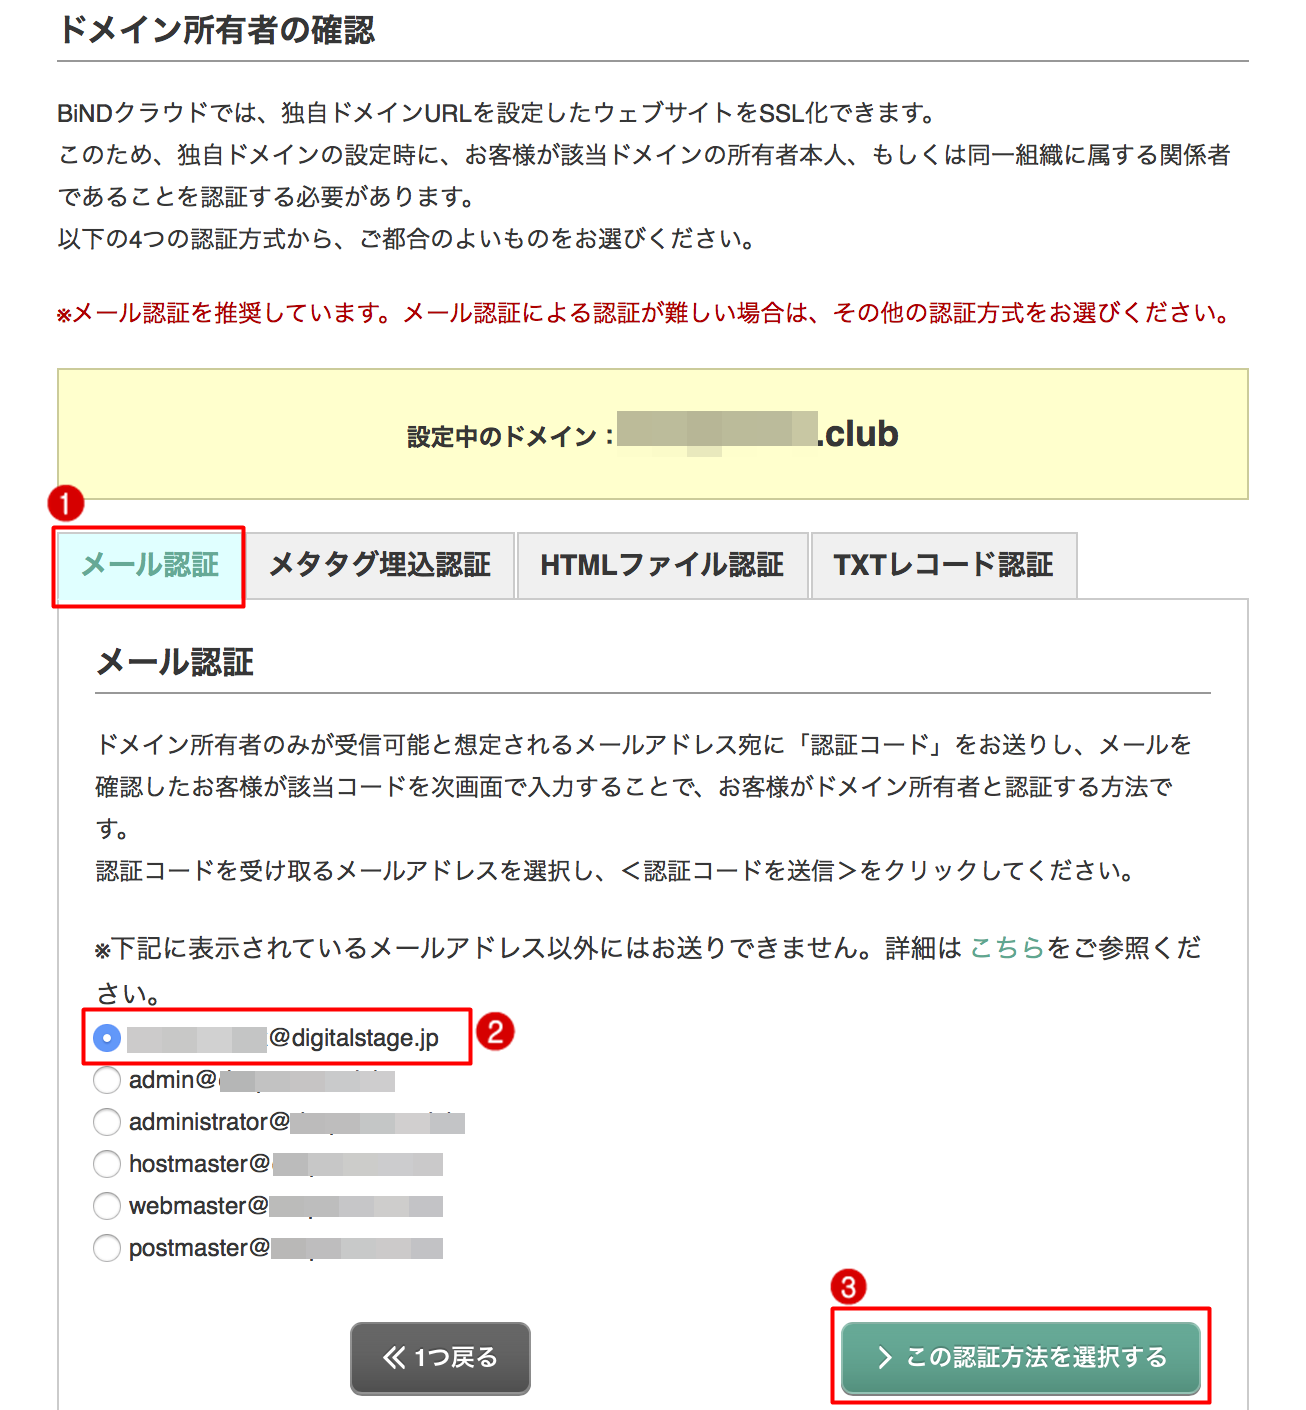 http://www.digitalstage.jp/support/weblife/manual/02-05-11_001.png